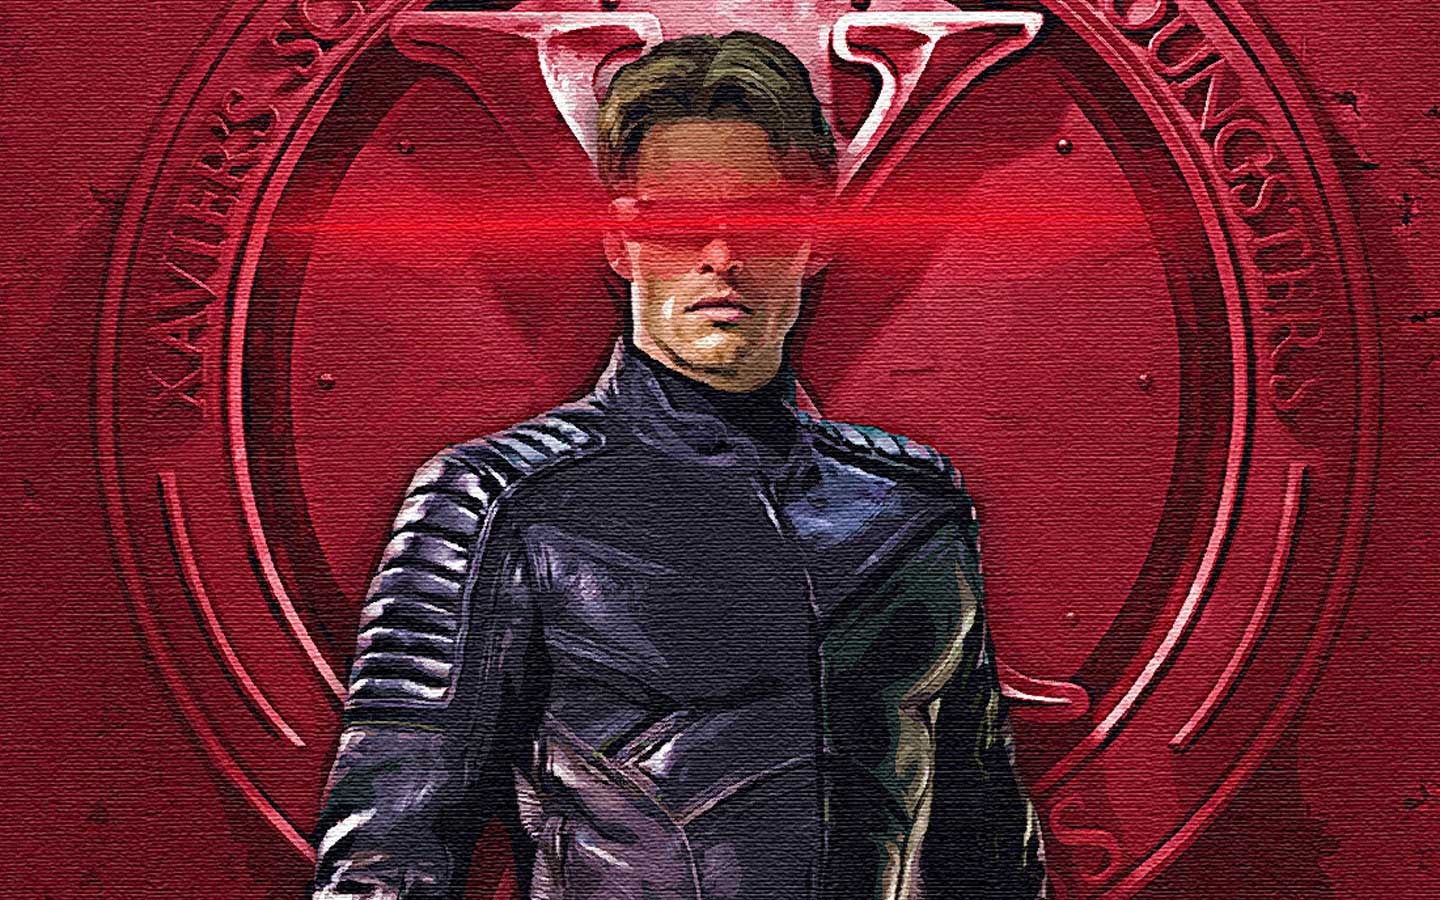 X Men Cyclops Wallpaper - WallpaperSafari